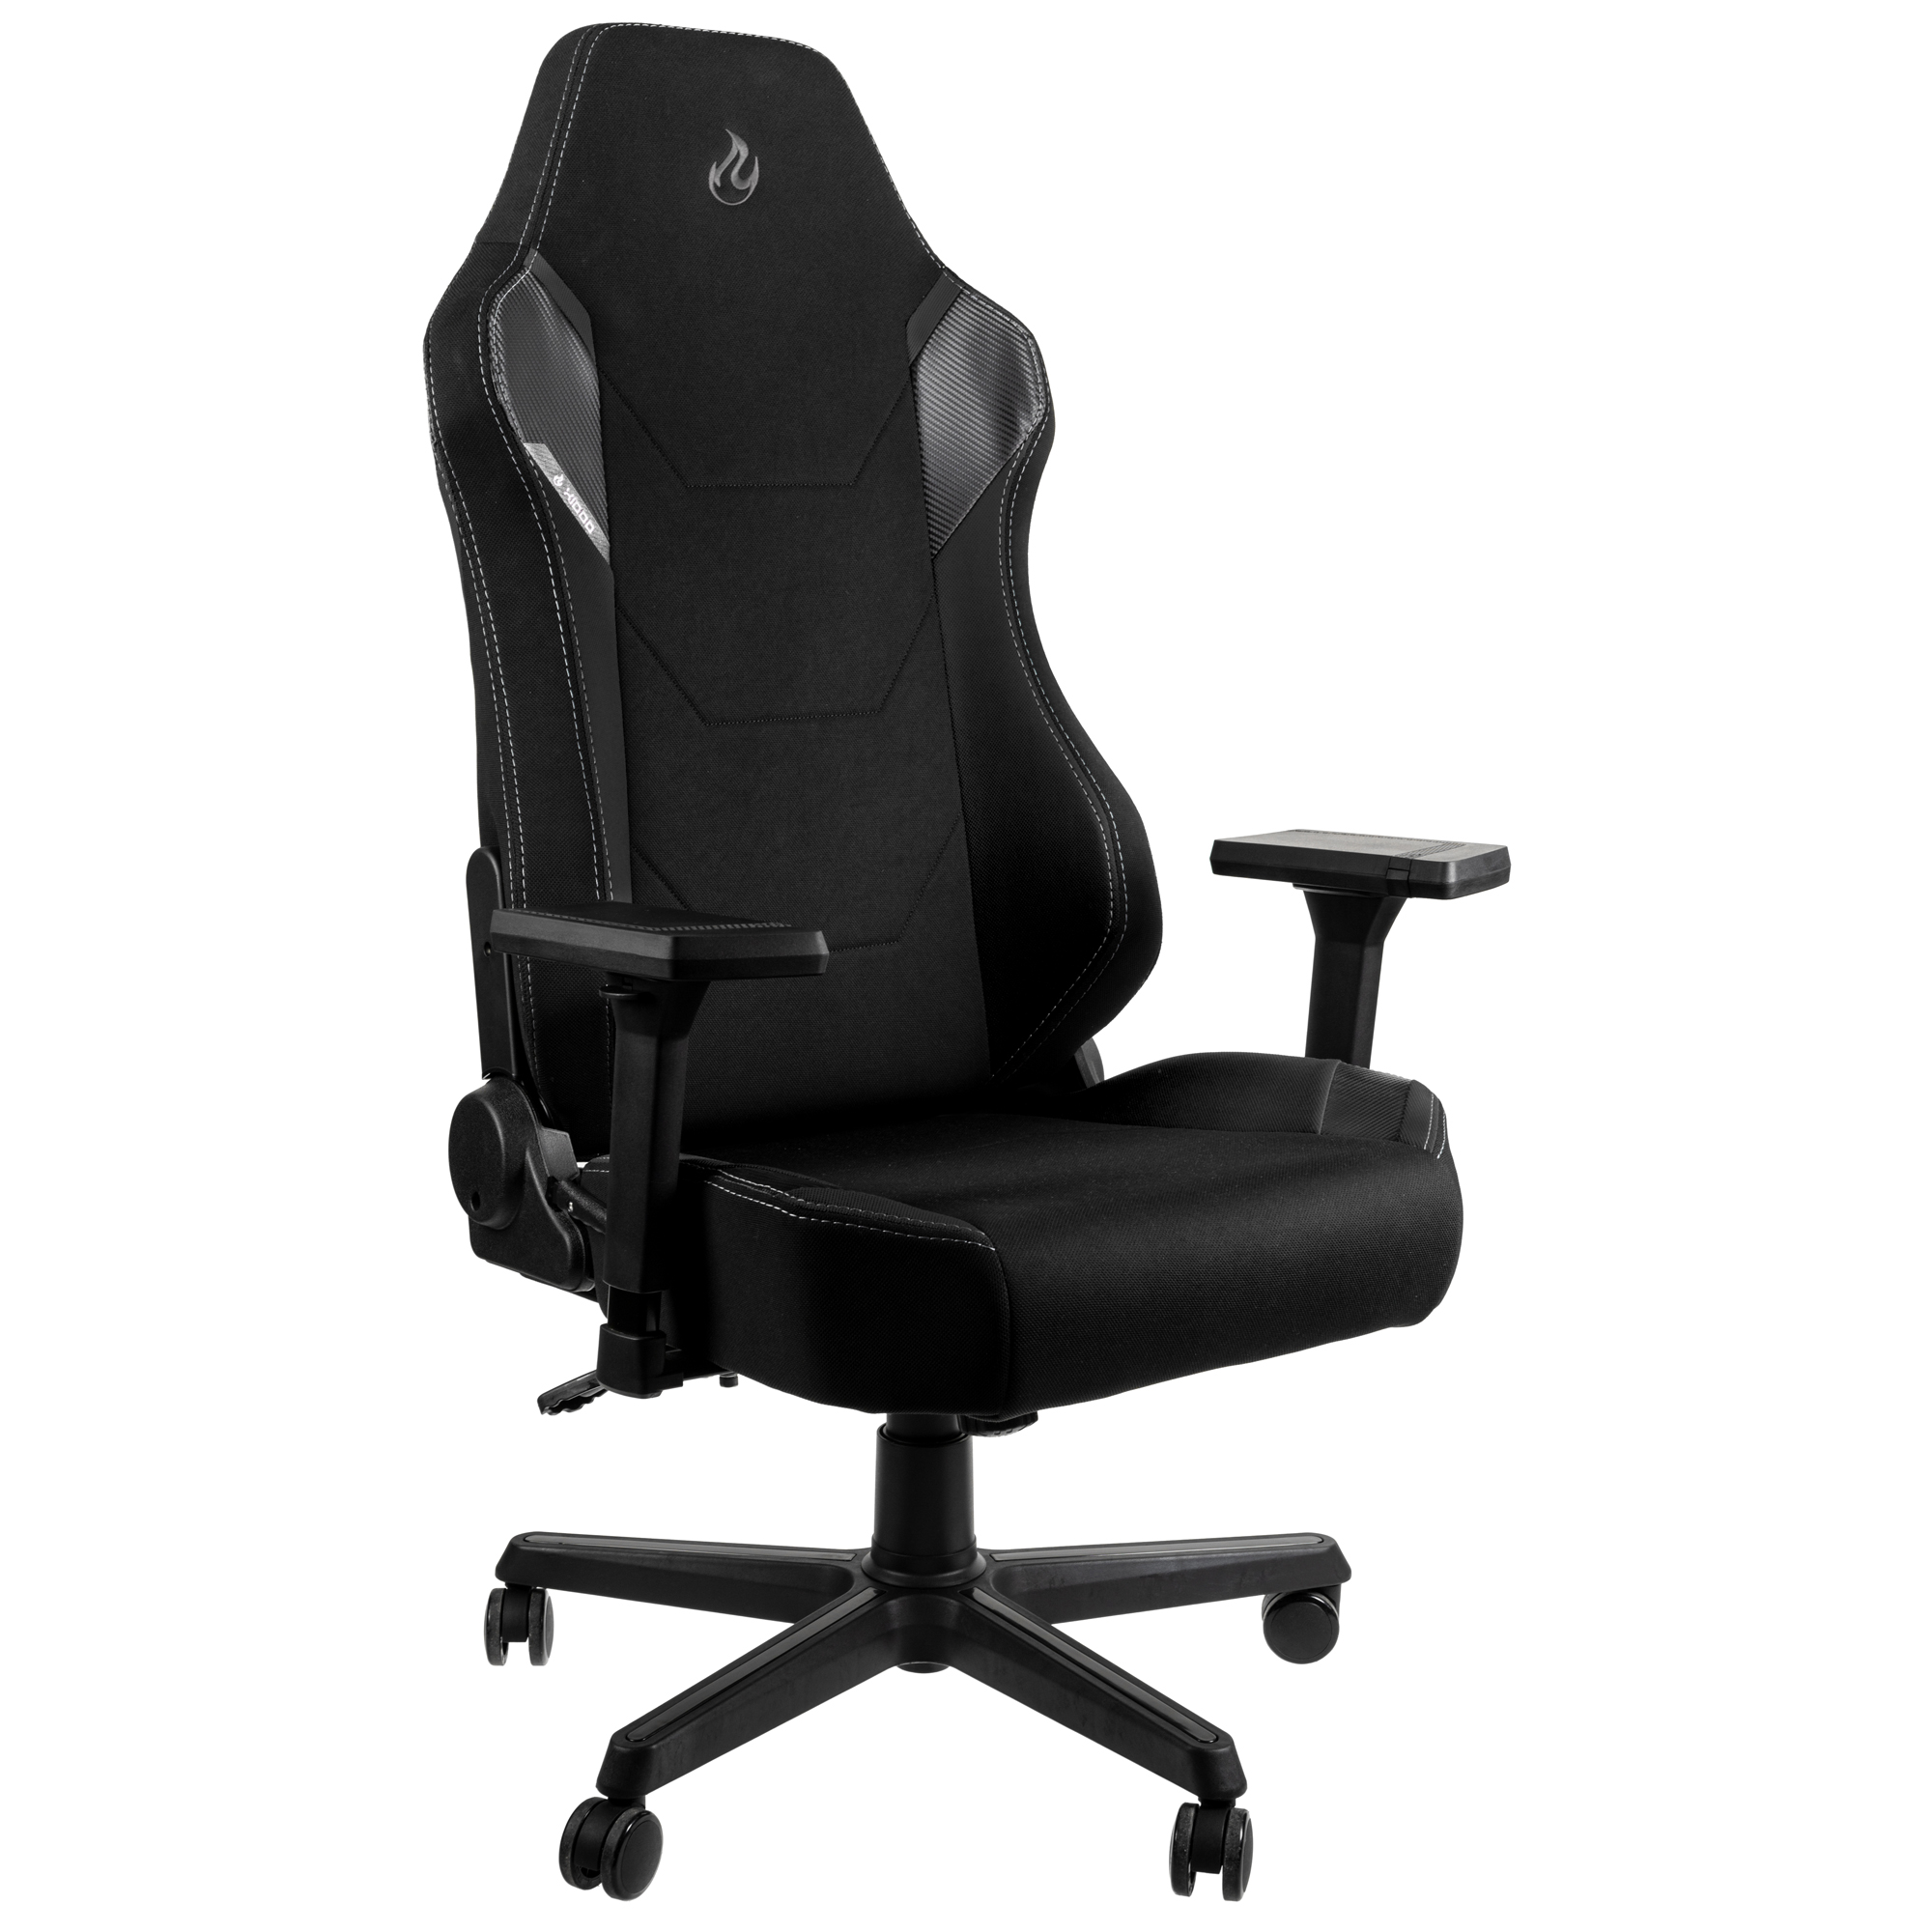  - X1000 Gaming Chair Black